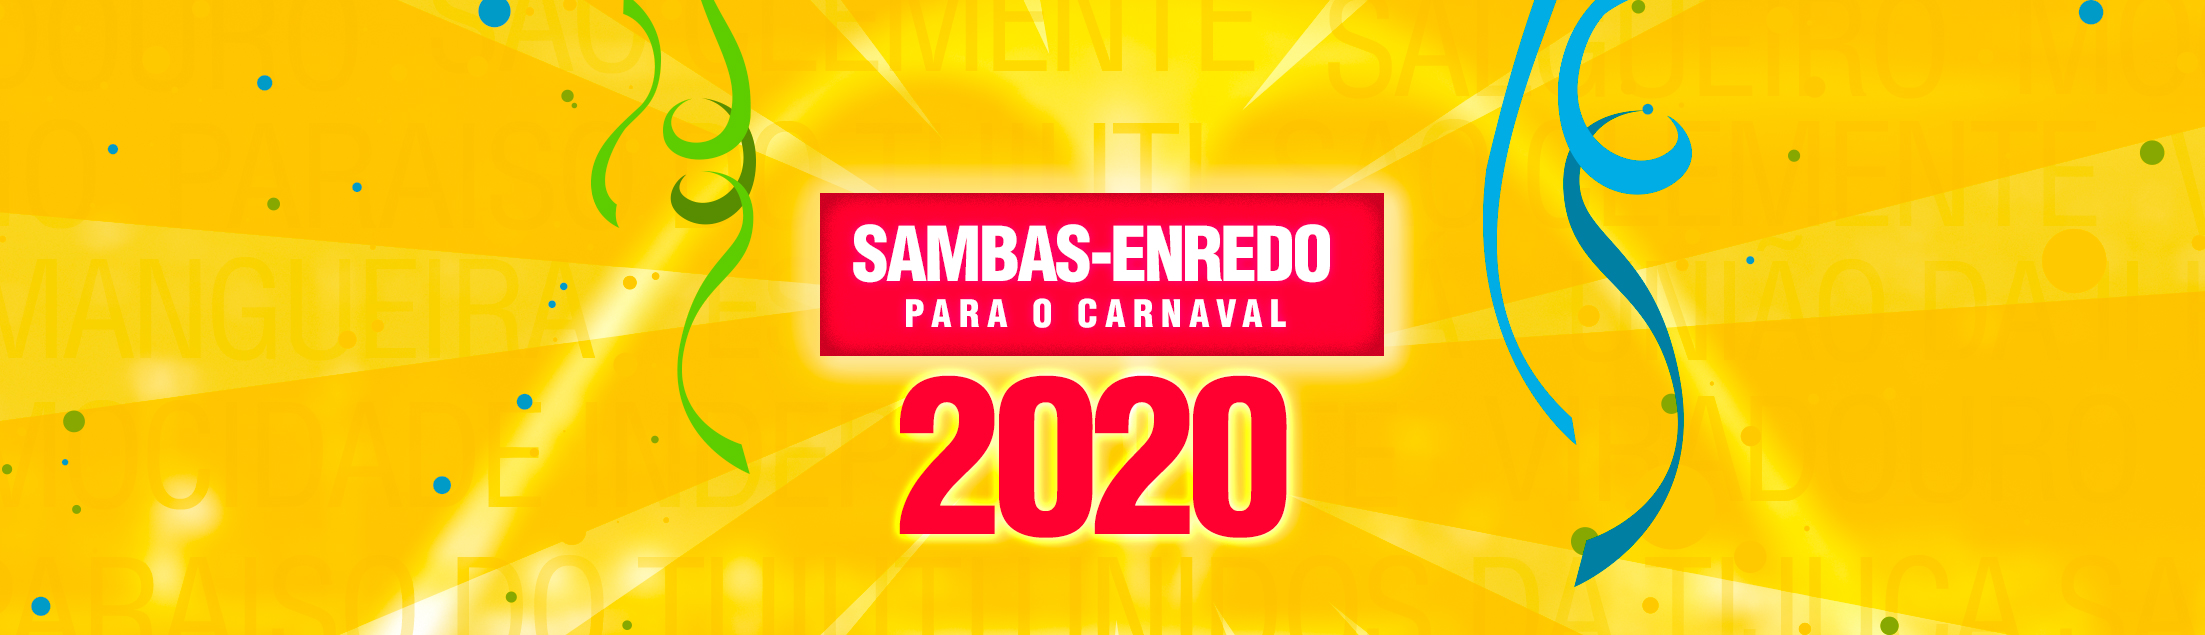 Conheça os 13 sambas-enredo que desfilam na Sapucaí em 2020